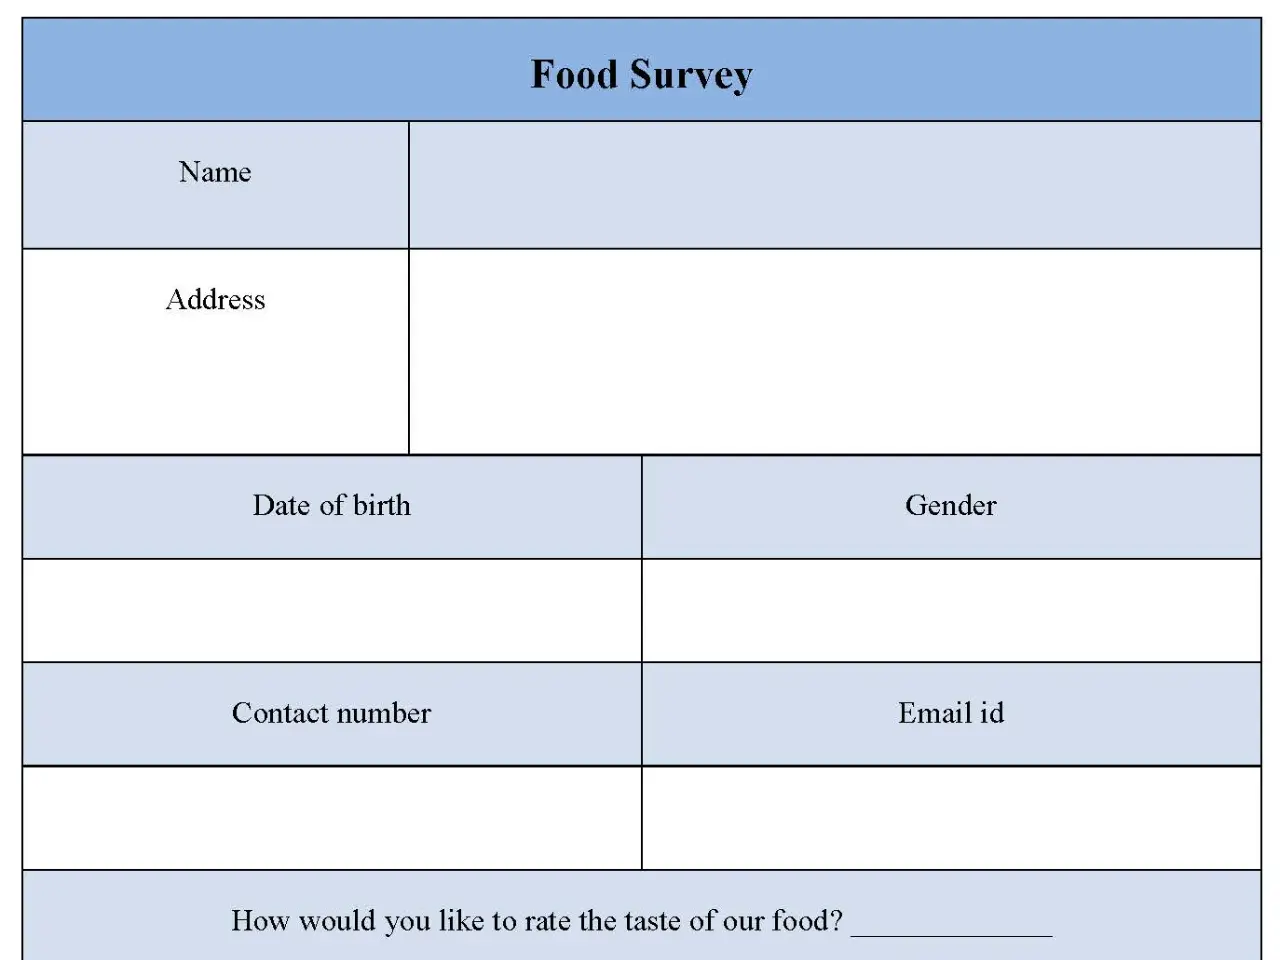 Food Survey Form